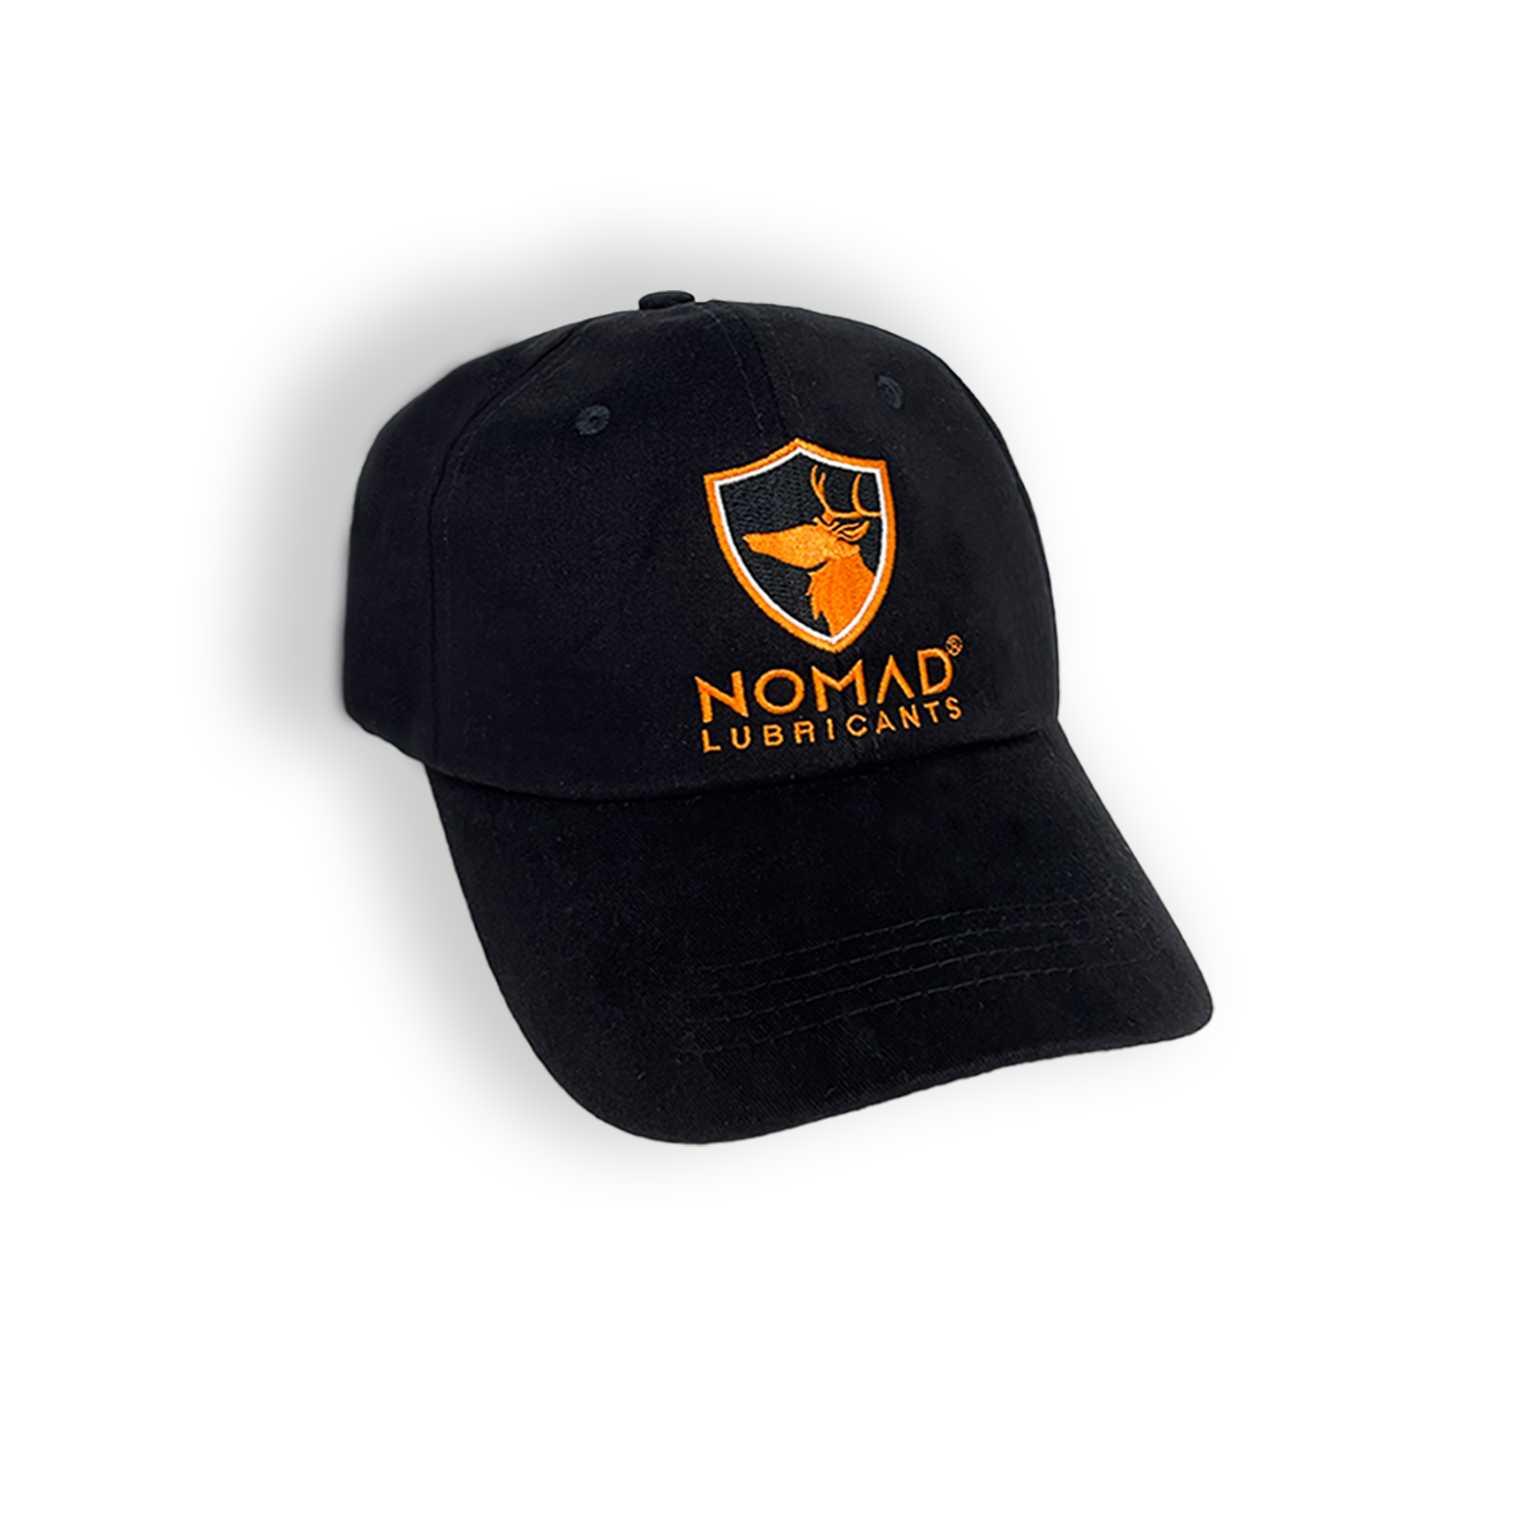 Nón kết hãng NOMAD Lubricants - Nón thời trang, logo thêu